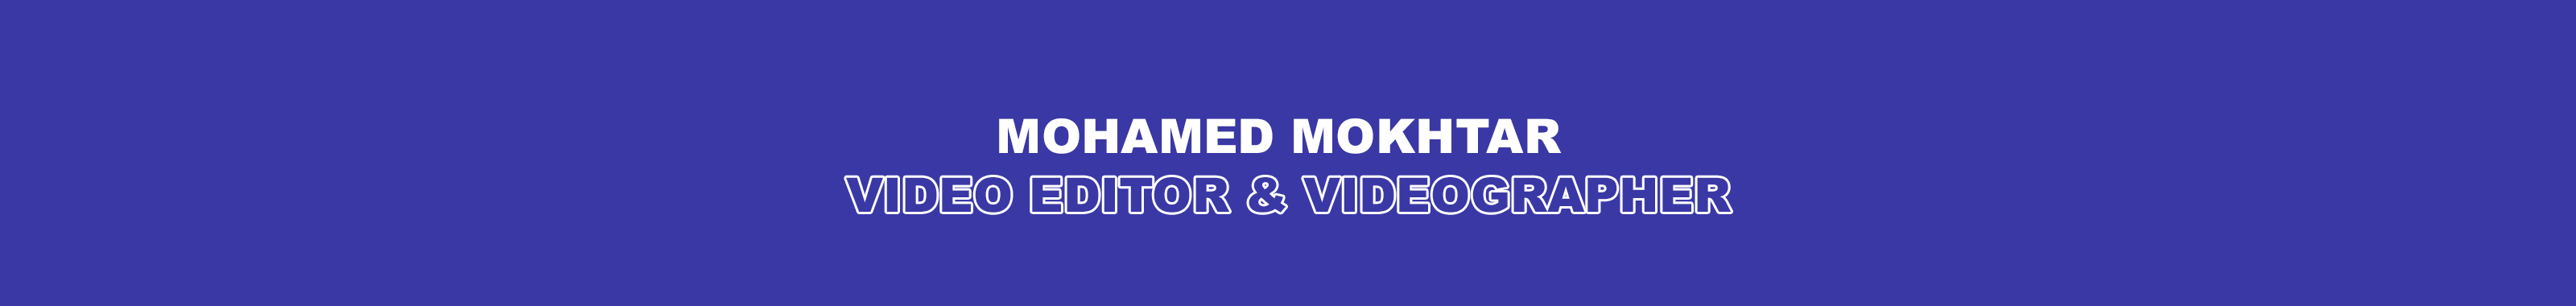 Banner de perfil de Mohamed Mokhtar